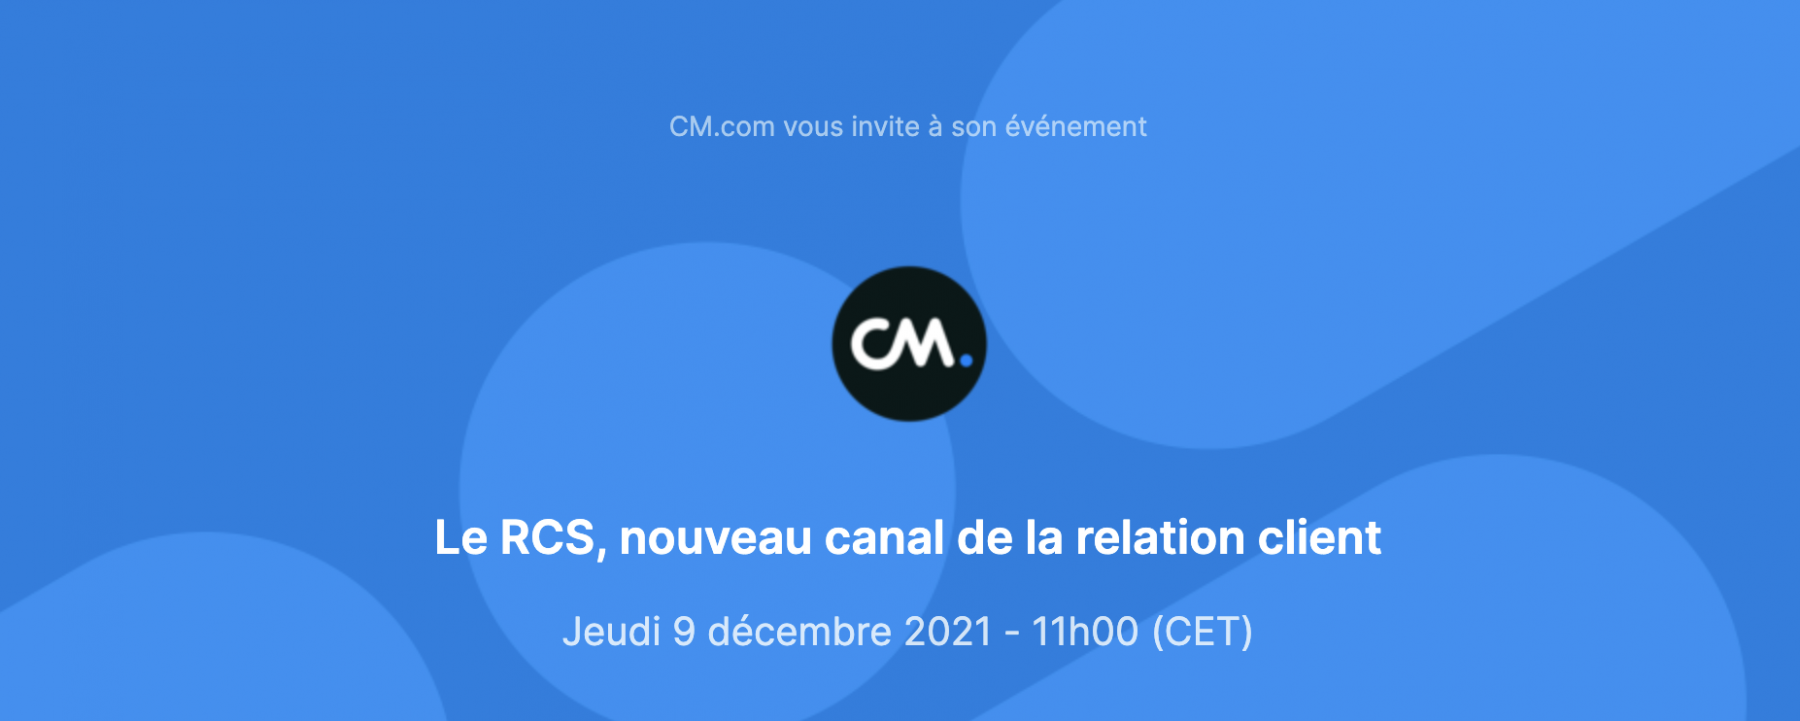 Le RCS, nouveau canal de la relation client cm.com